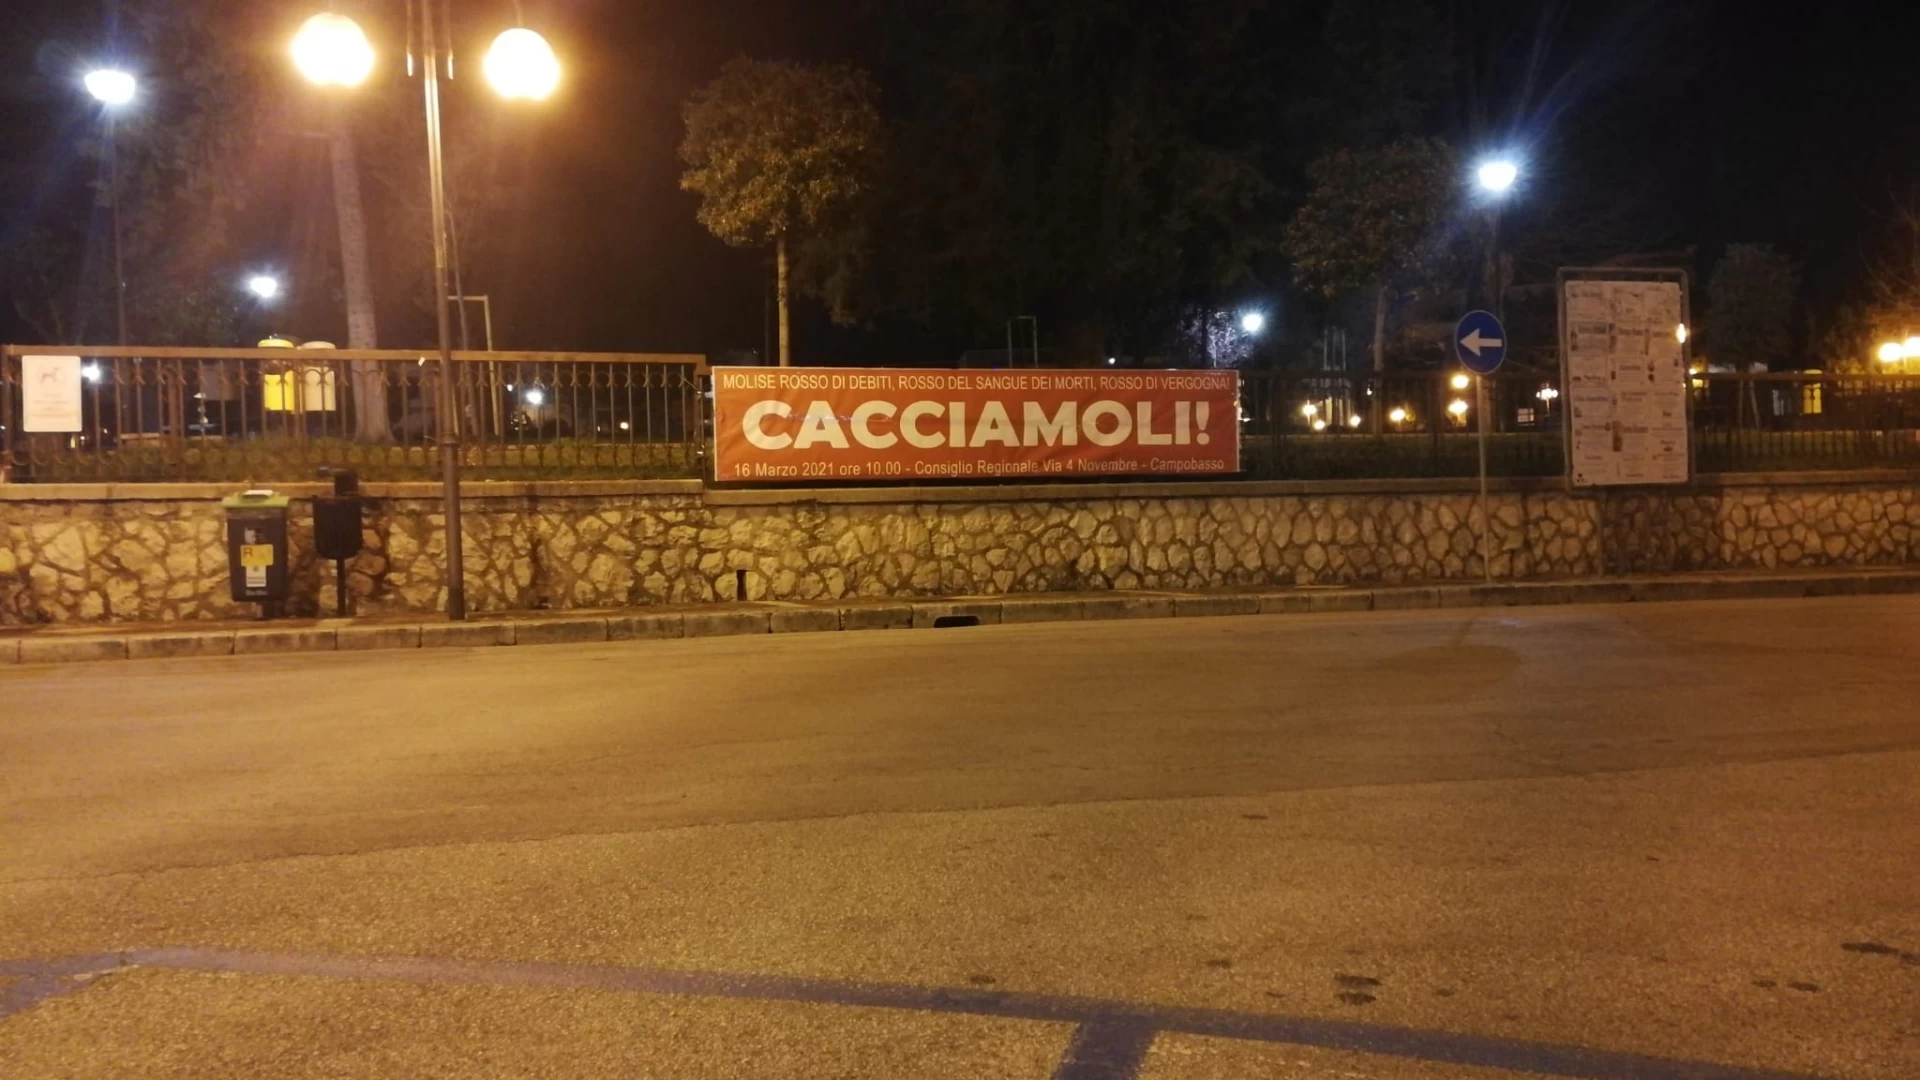 Isernia: Emilio Izzo presenta l’iniziativa “Cacciamoli” nei pressi della Villa comunale.